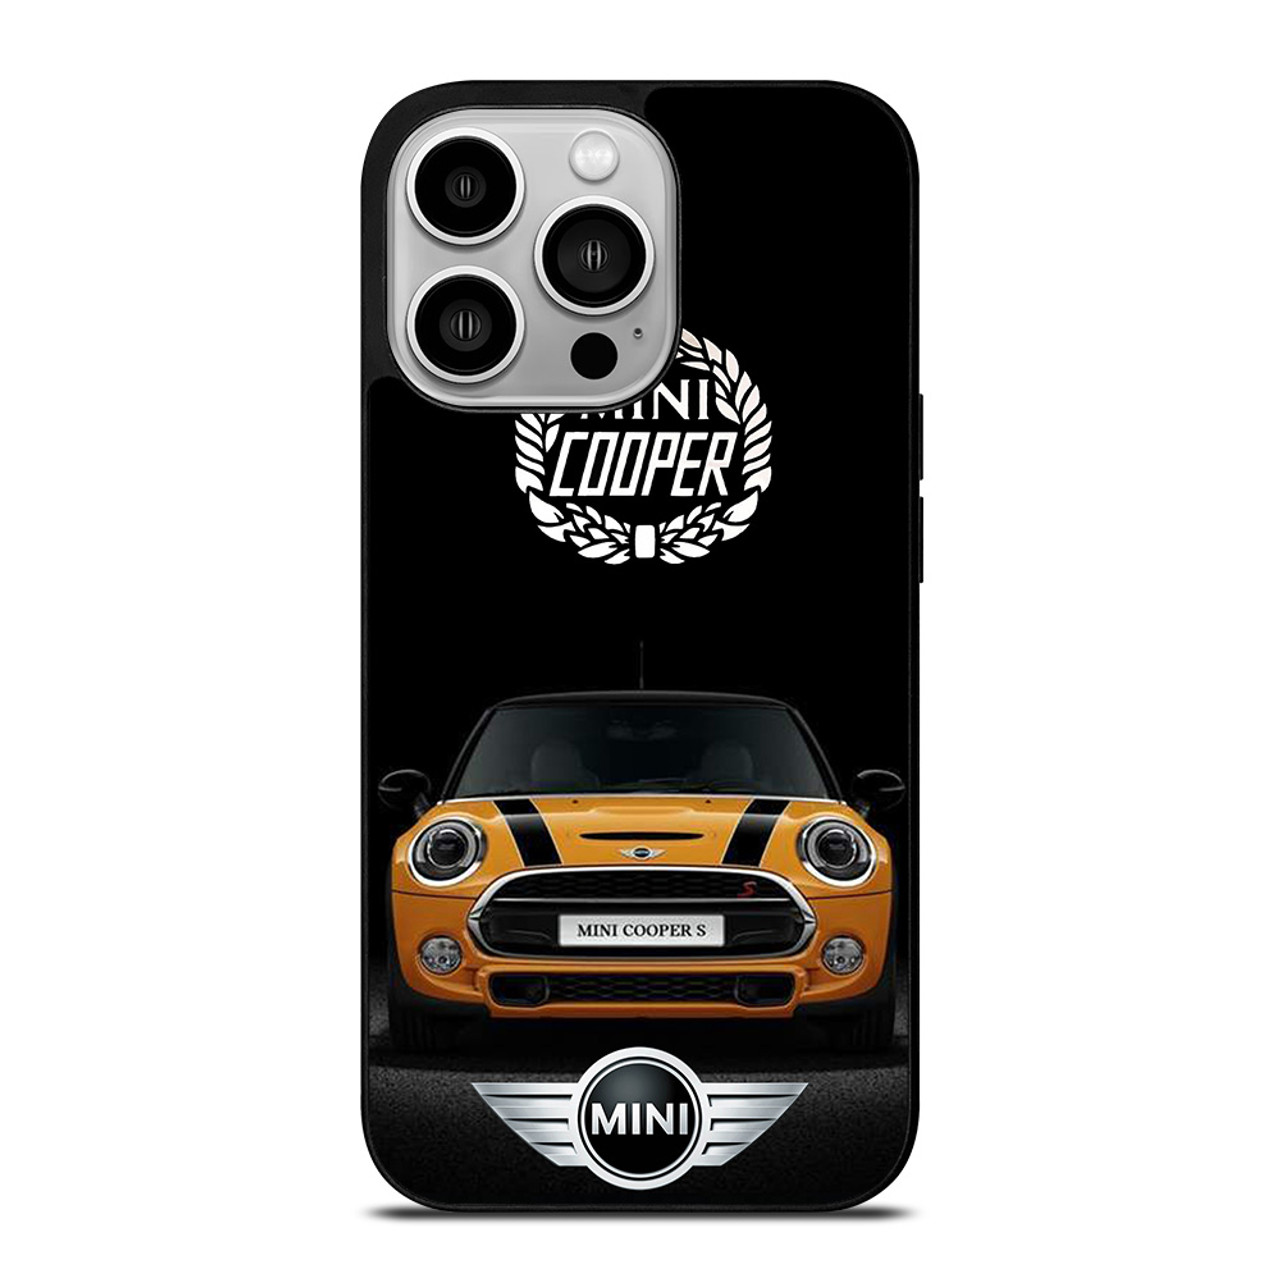 mini cooper iphone case – Kaufen Sie mini cooper iphone case mit